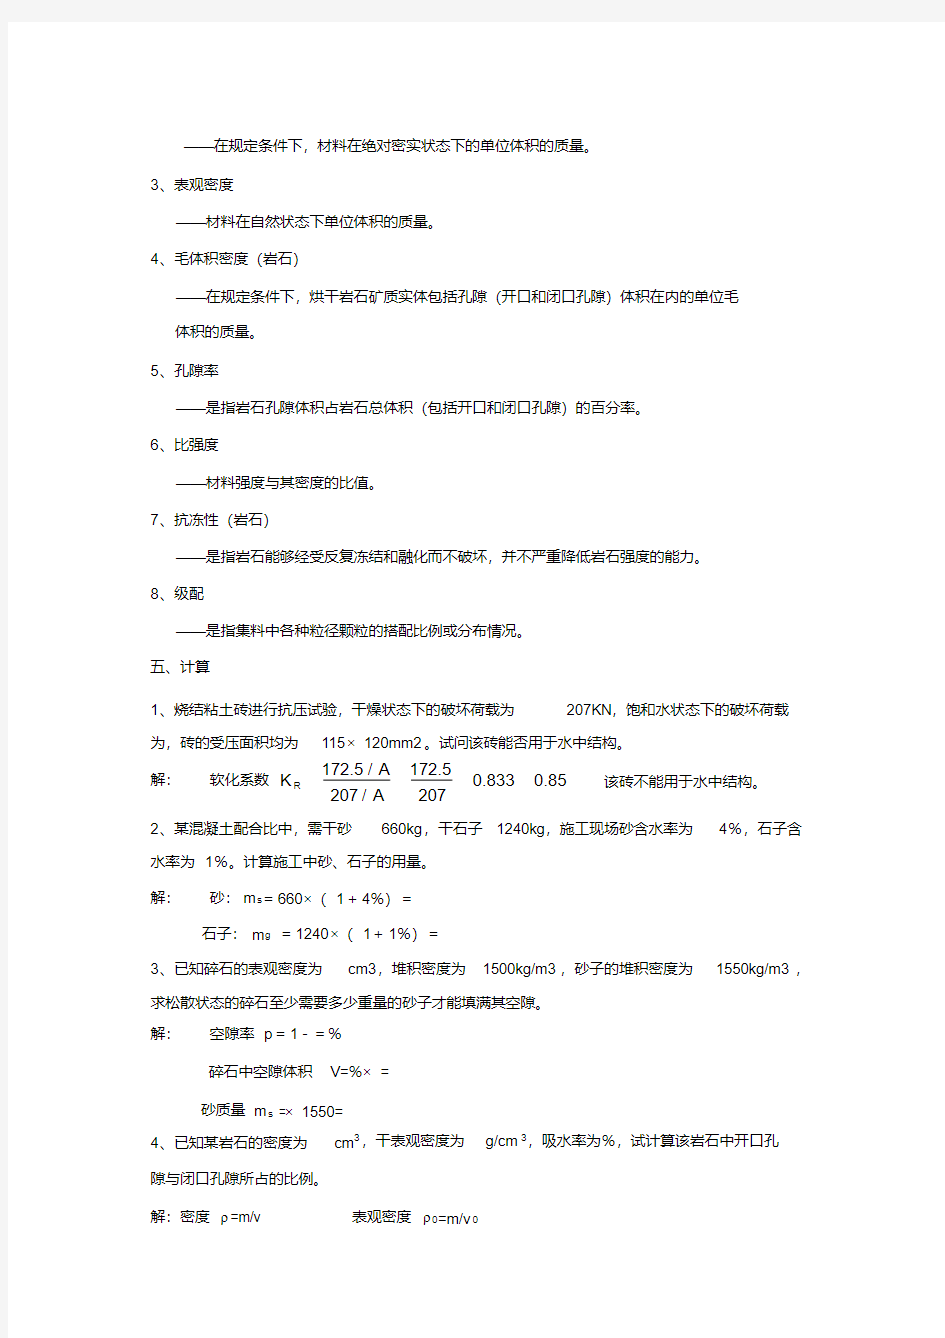 《道路工程材料》习题册参考答案(全)(1).pdf